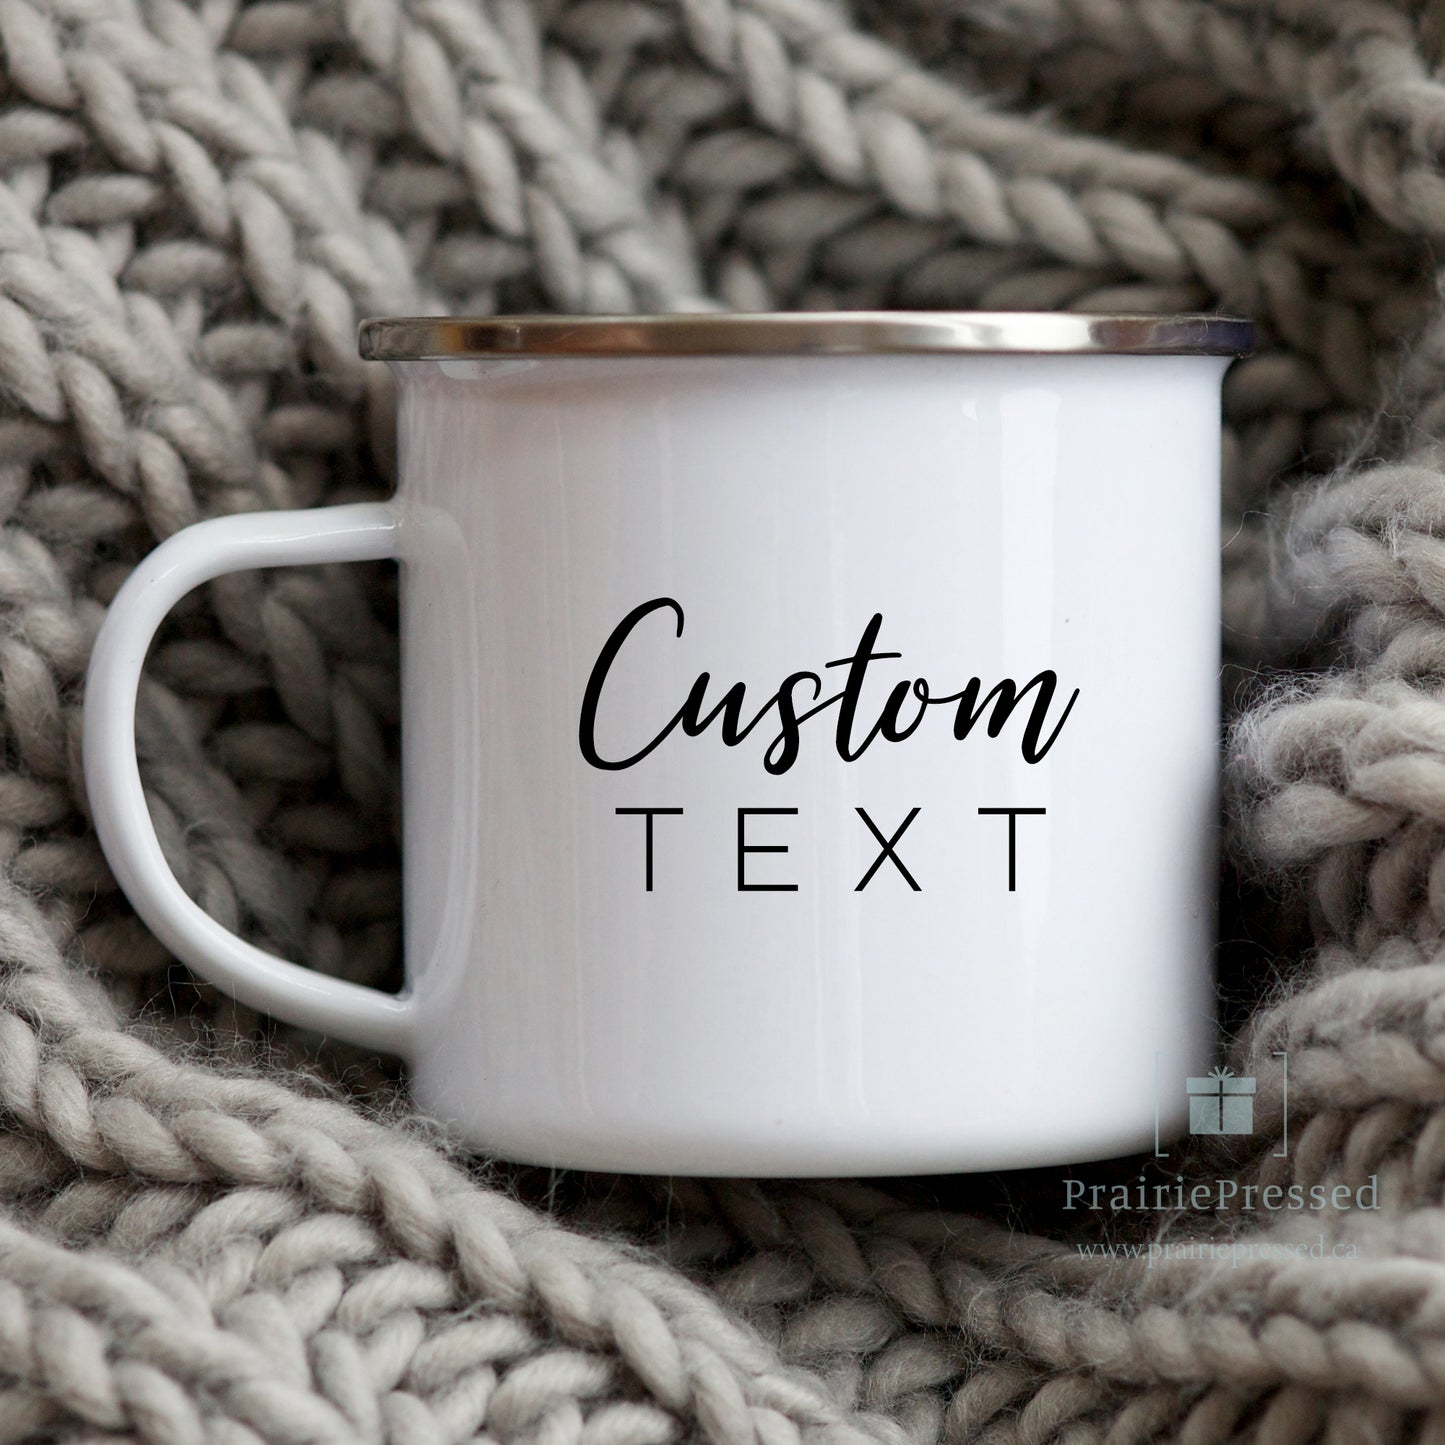 Custom Enamel Mug - Add Your Text, Logo, or Quote